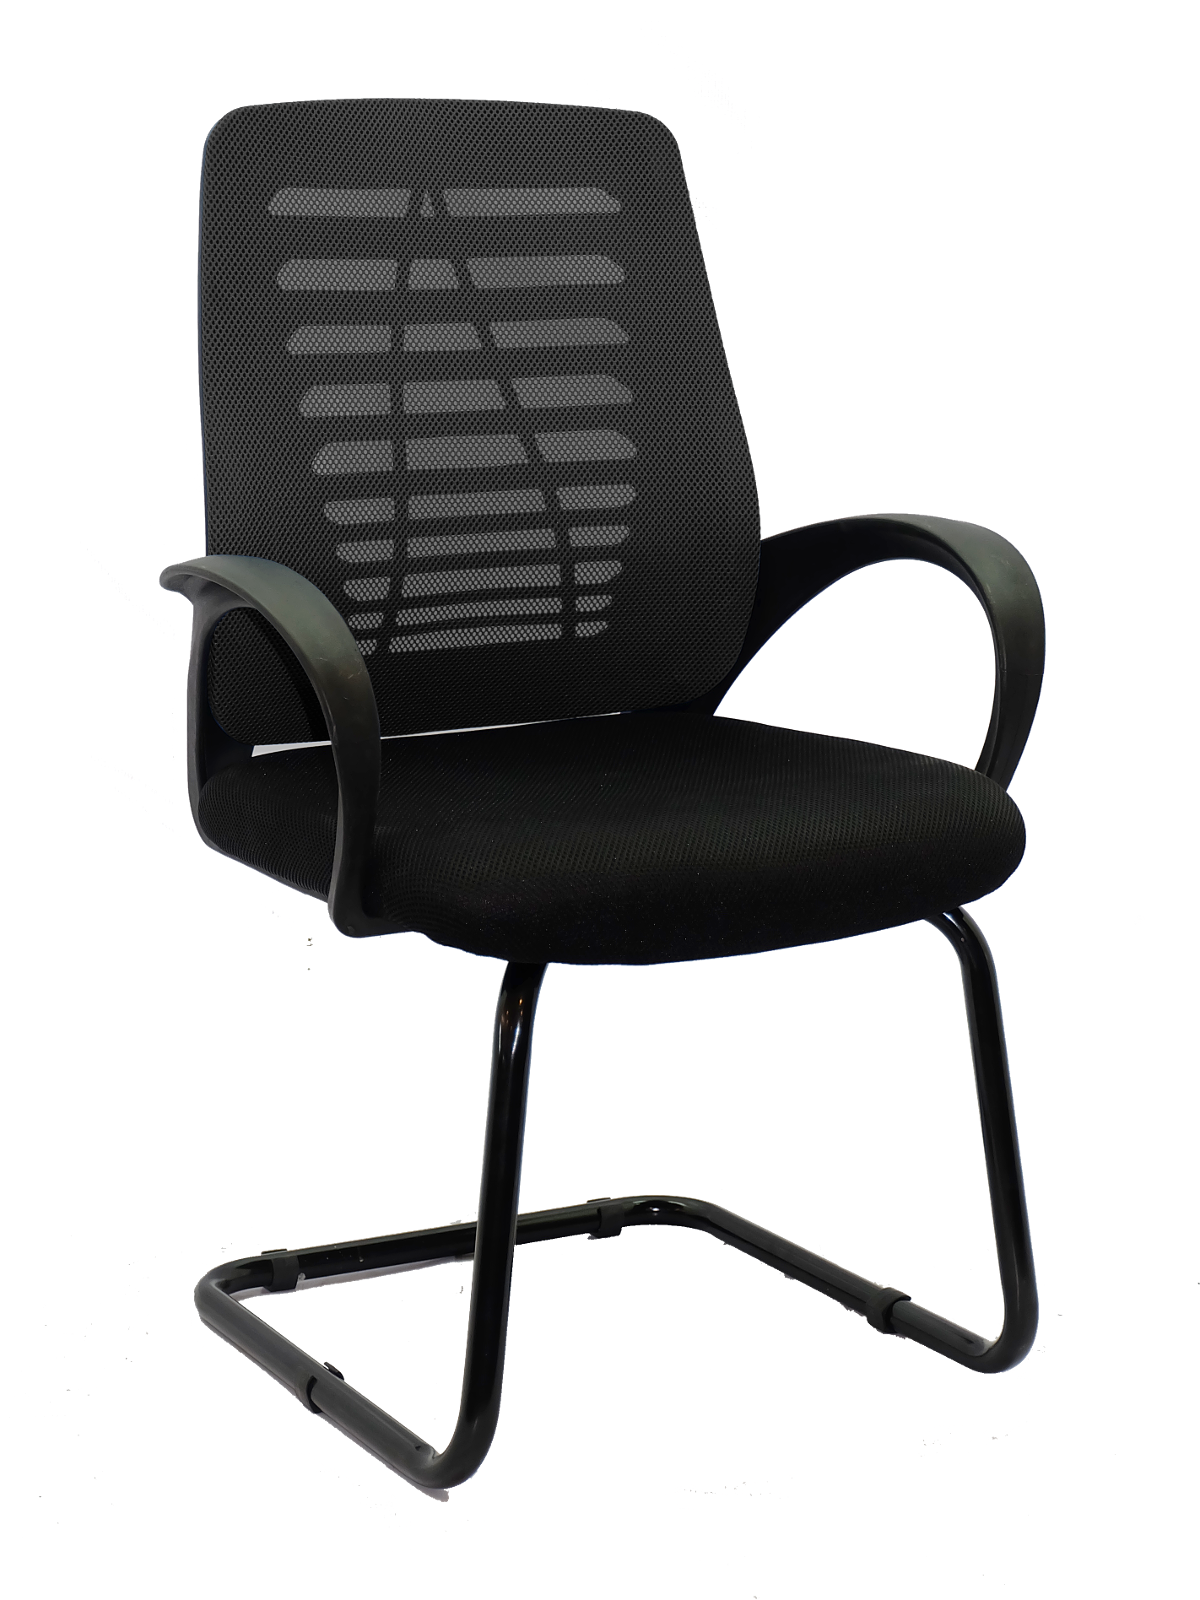 เก้าอี้ ห้องปสำนักงานระชุม รุ่น ERGO-B 516 V